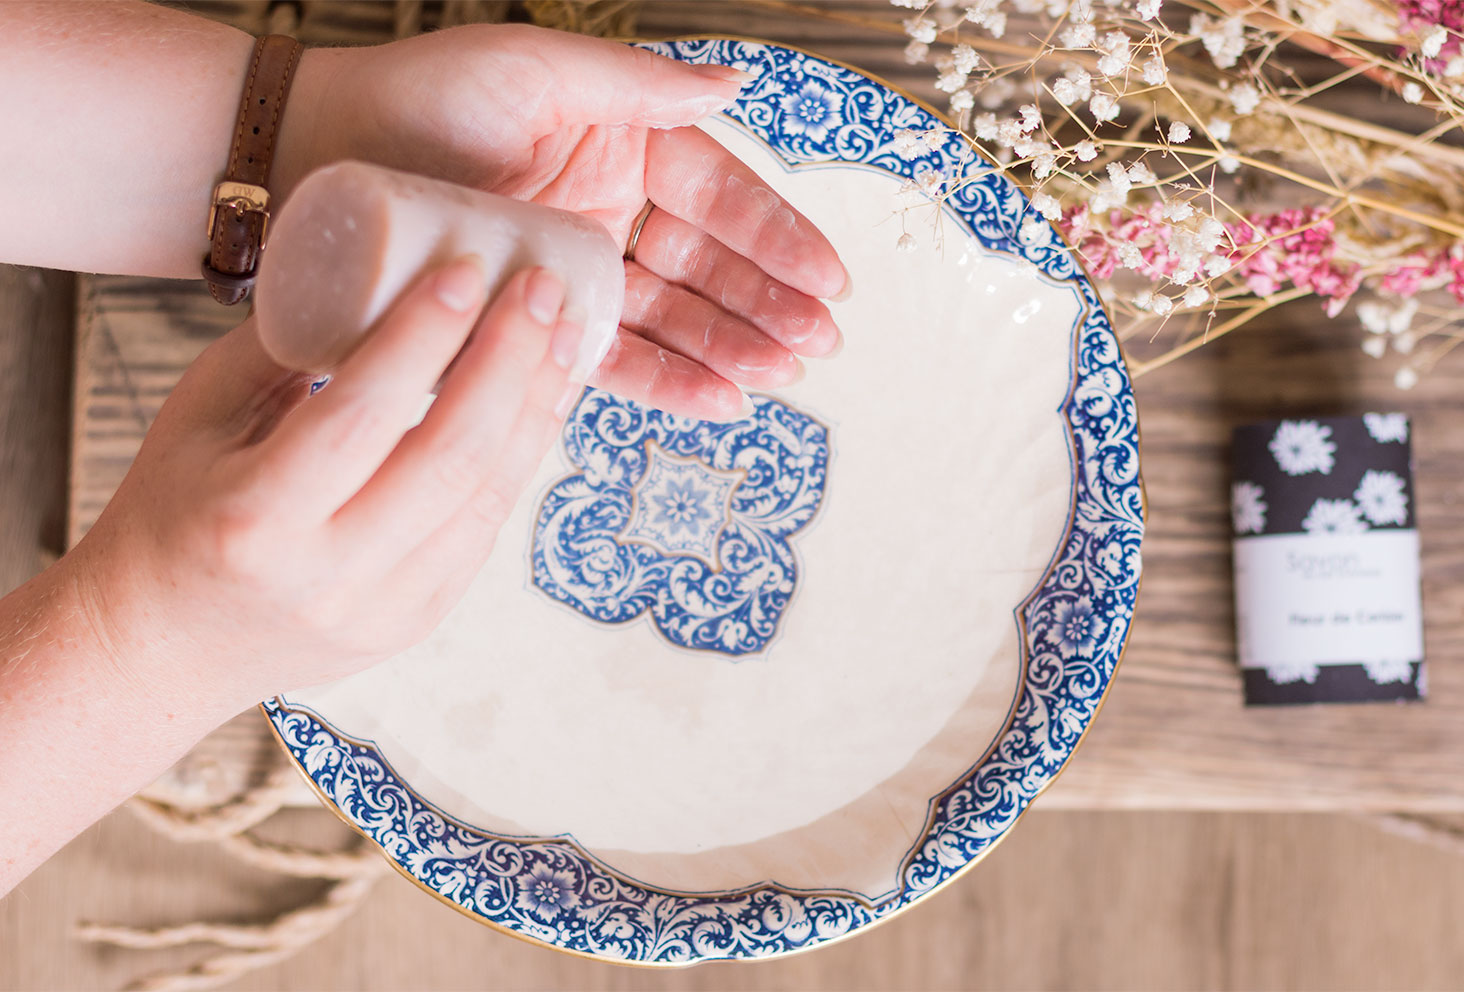 Utilisation du savon Sento au lait d'ânesse de L'art du Bain au dessus des fleurs séchées dans une vasque en porcelaine bleue et blanche